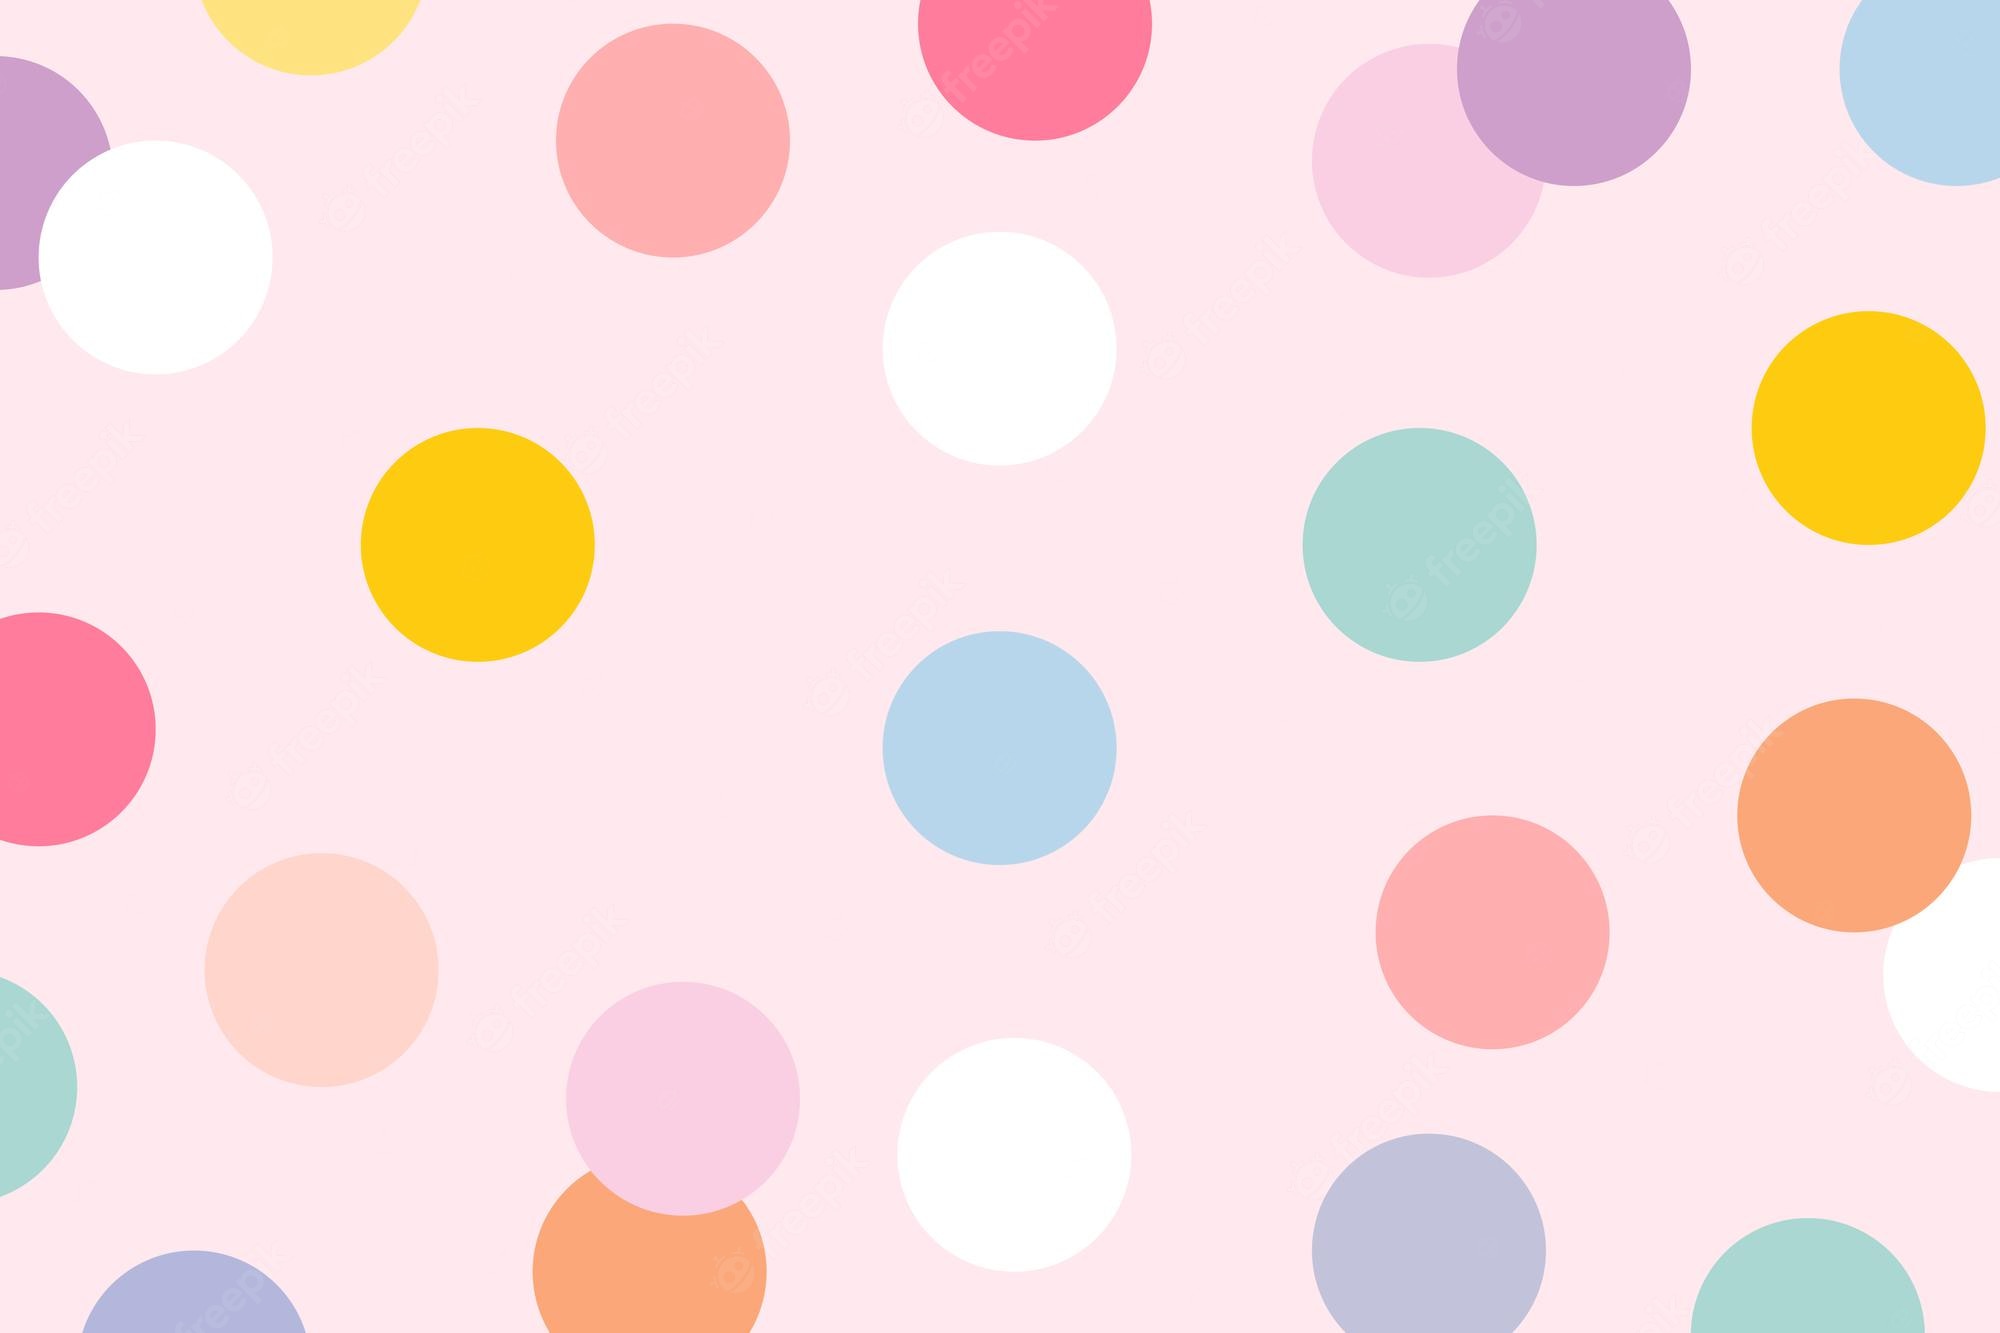 Pink Polka Dots Image. Free Vectors, & PSD